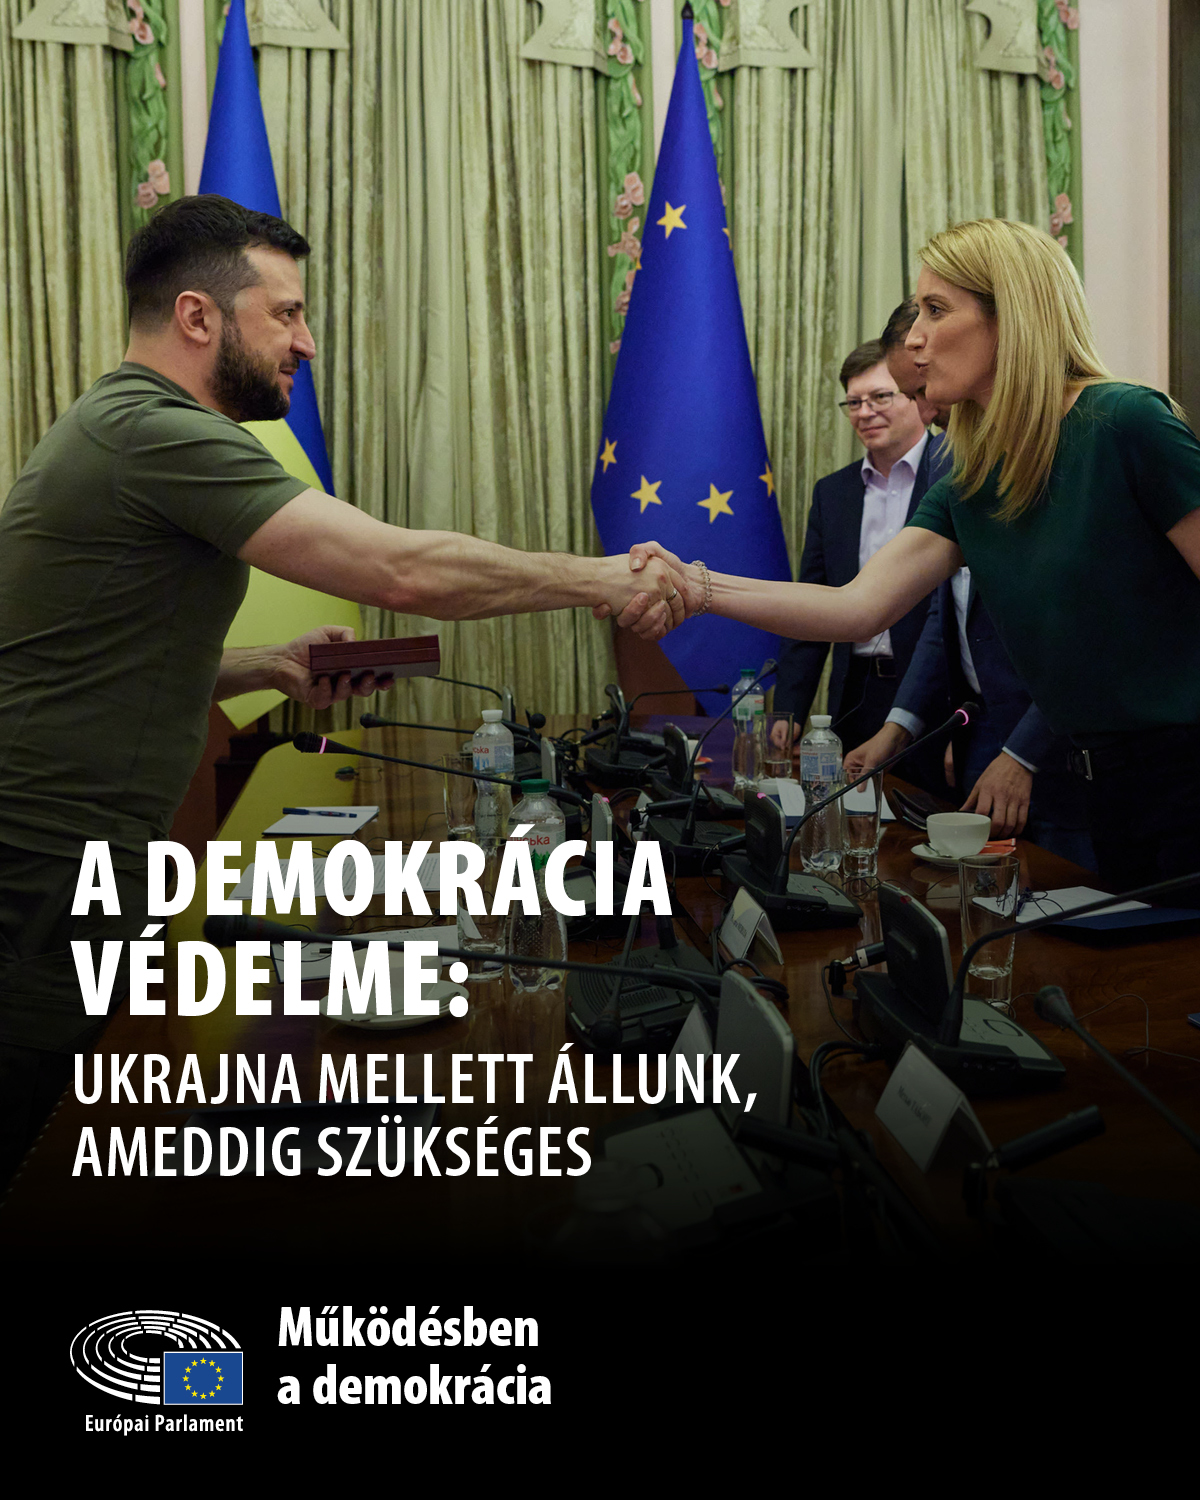 Defending Democracy: Ukraine 1 - 4:5.jpg